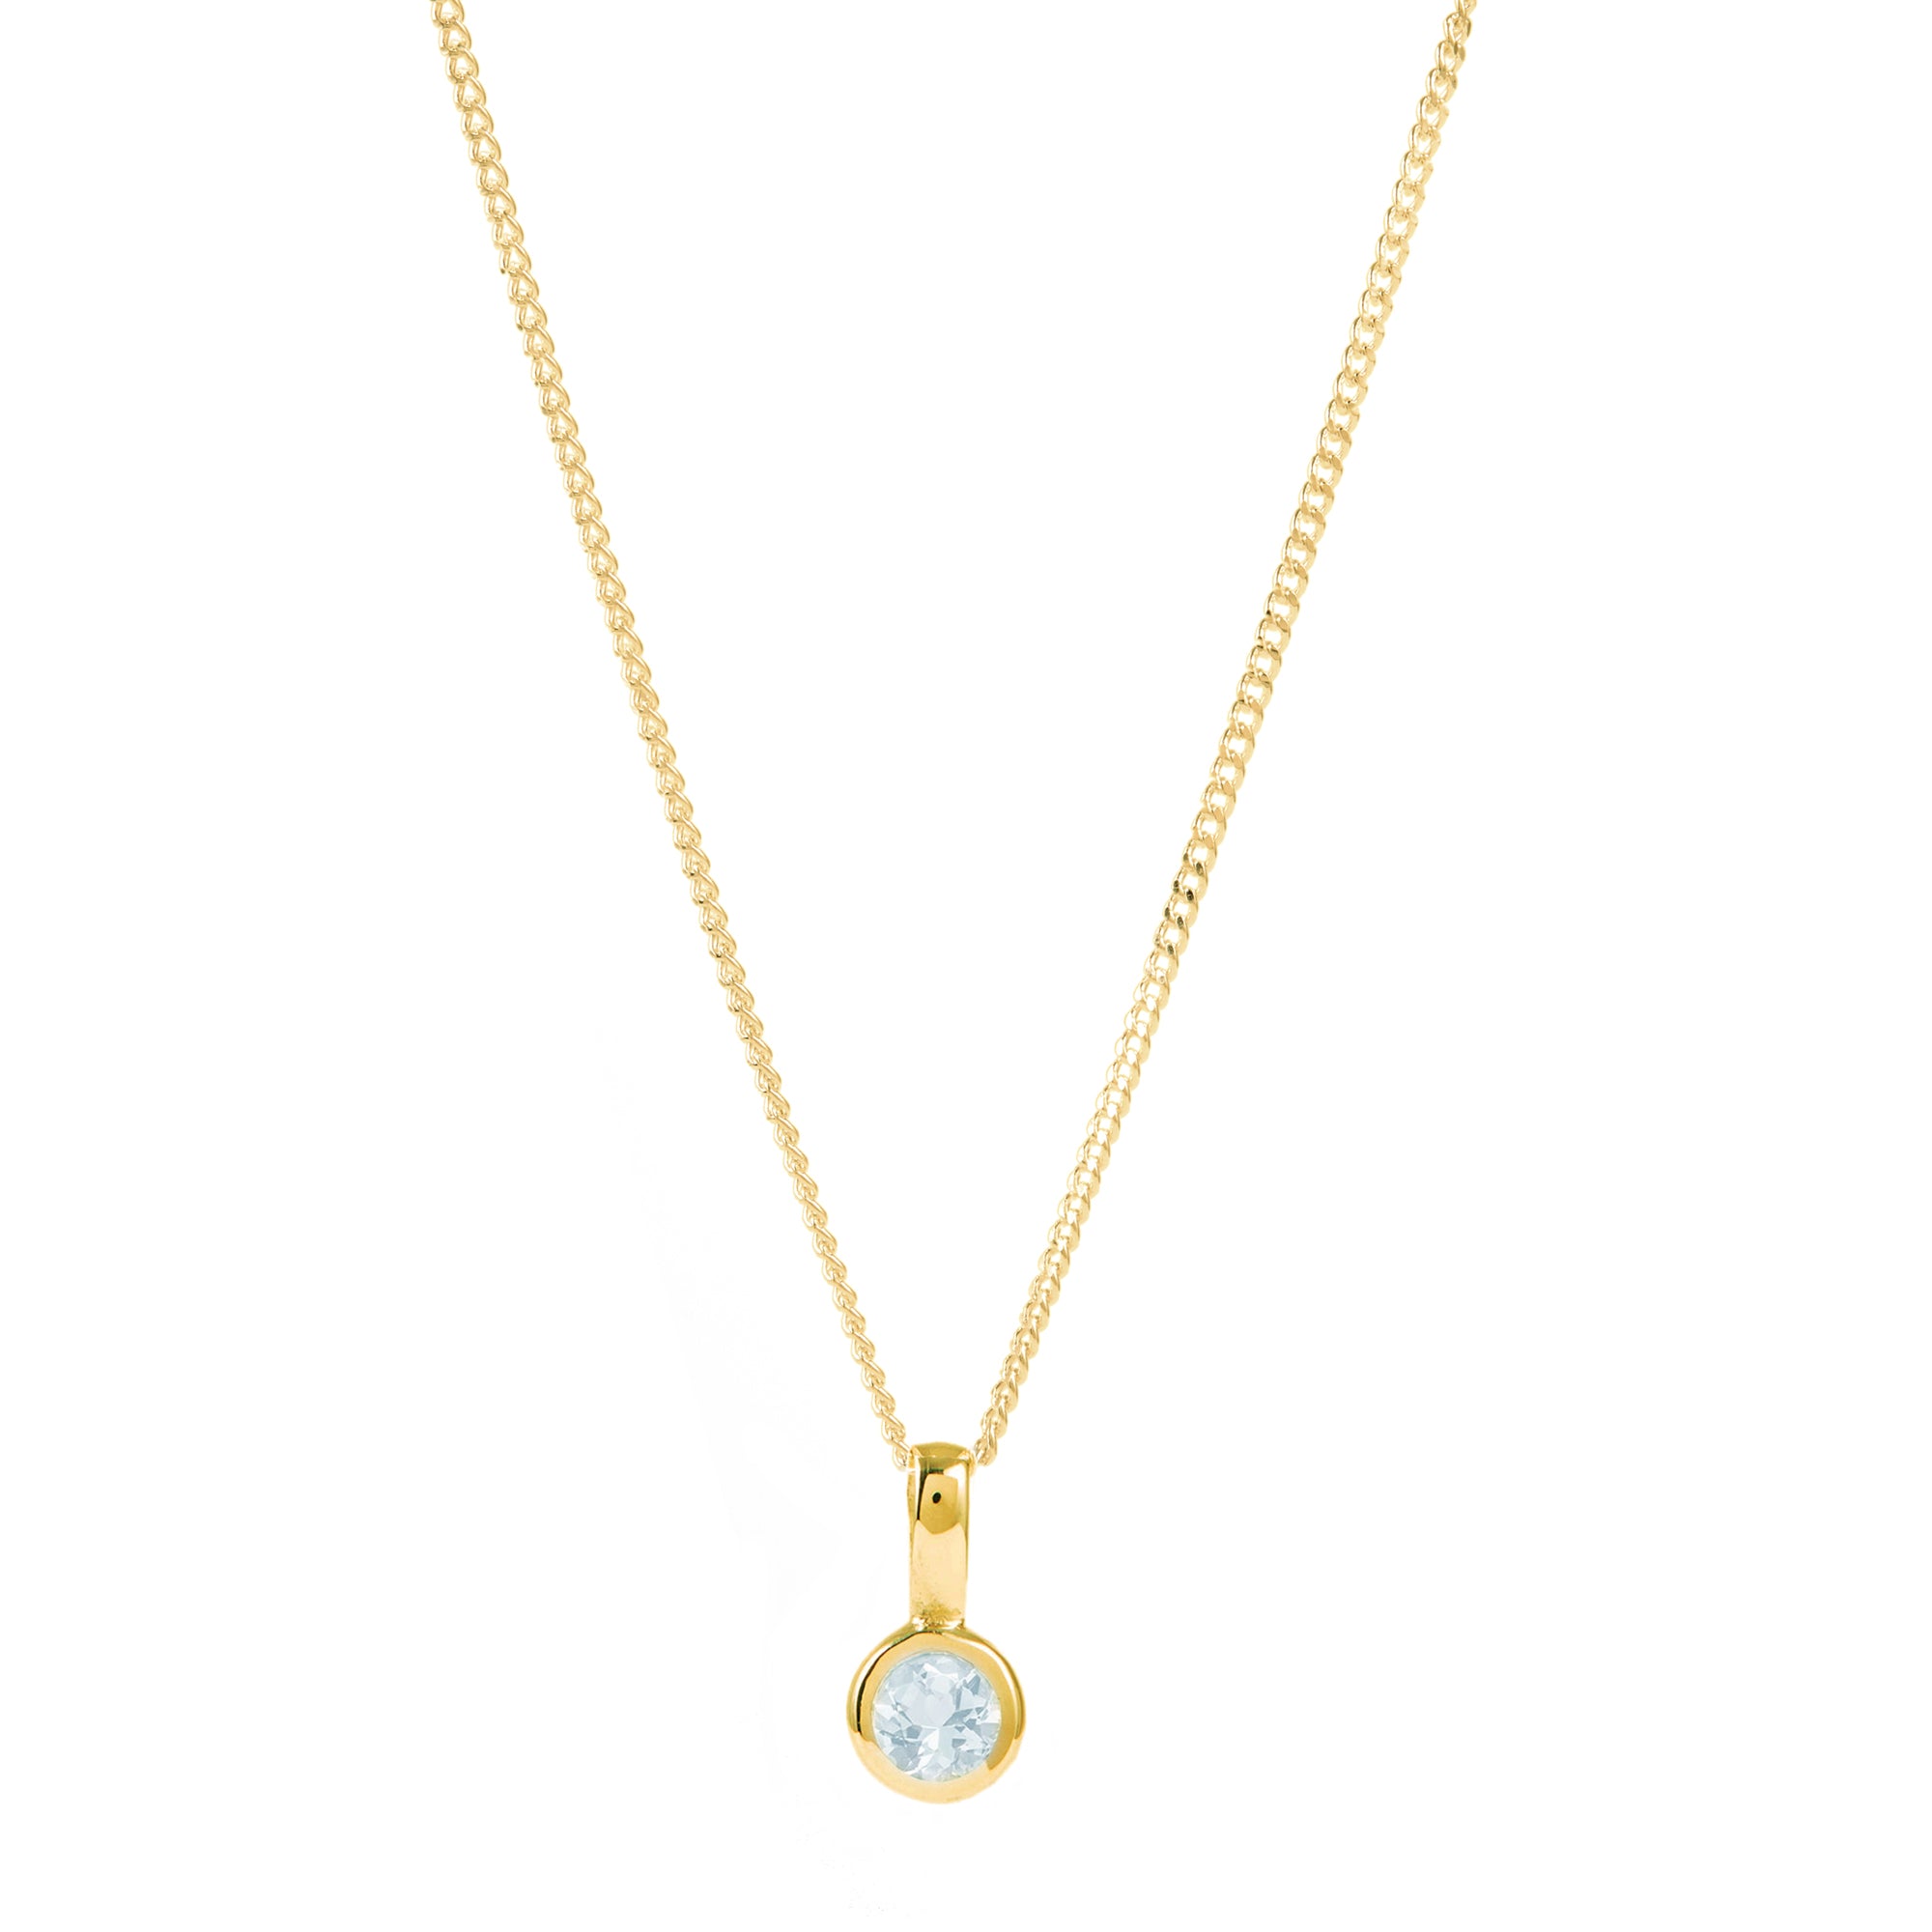 March Birthstone Charm Necklace - Aquamarine